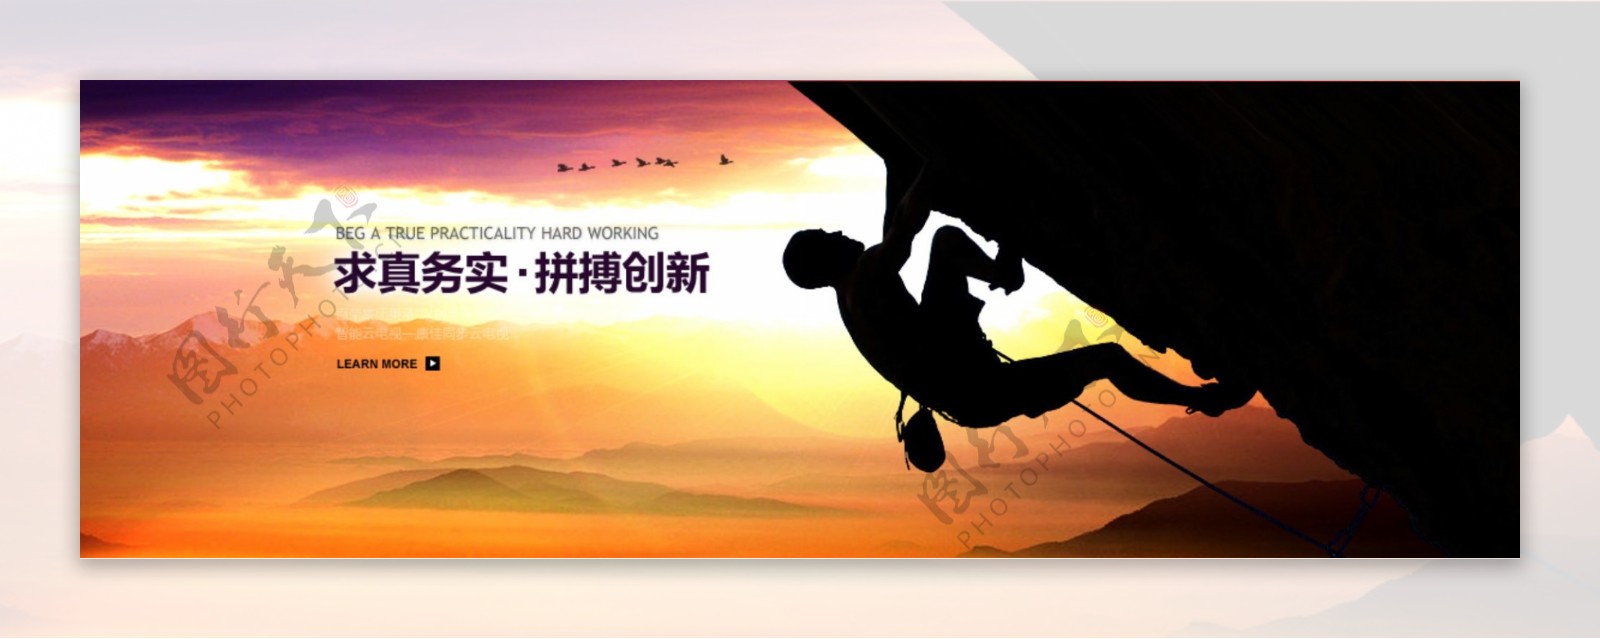 集团banner图片